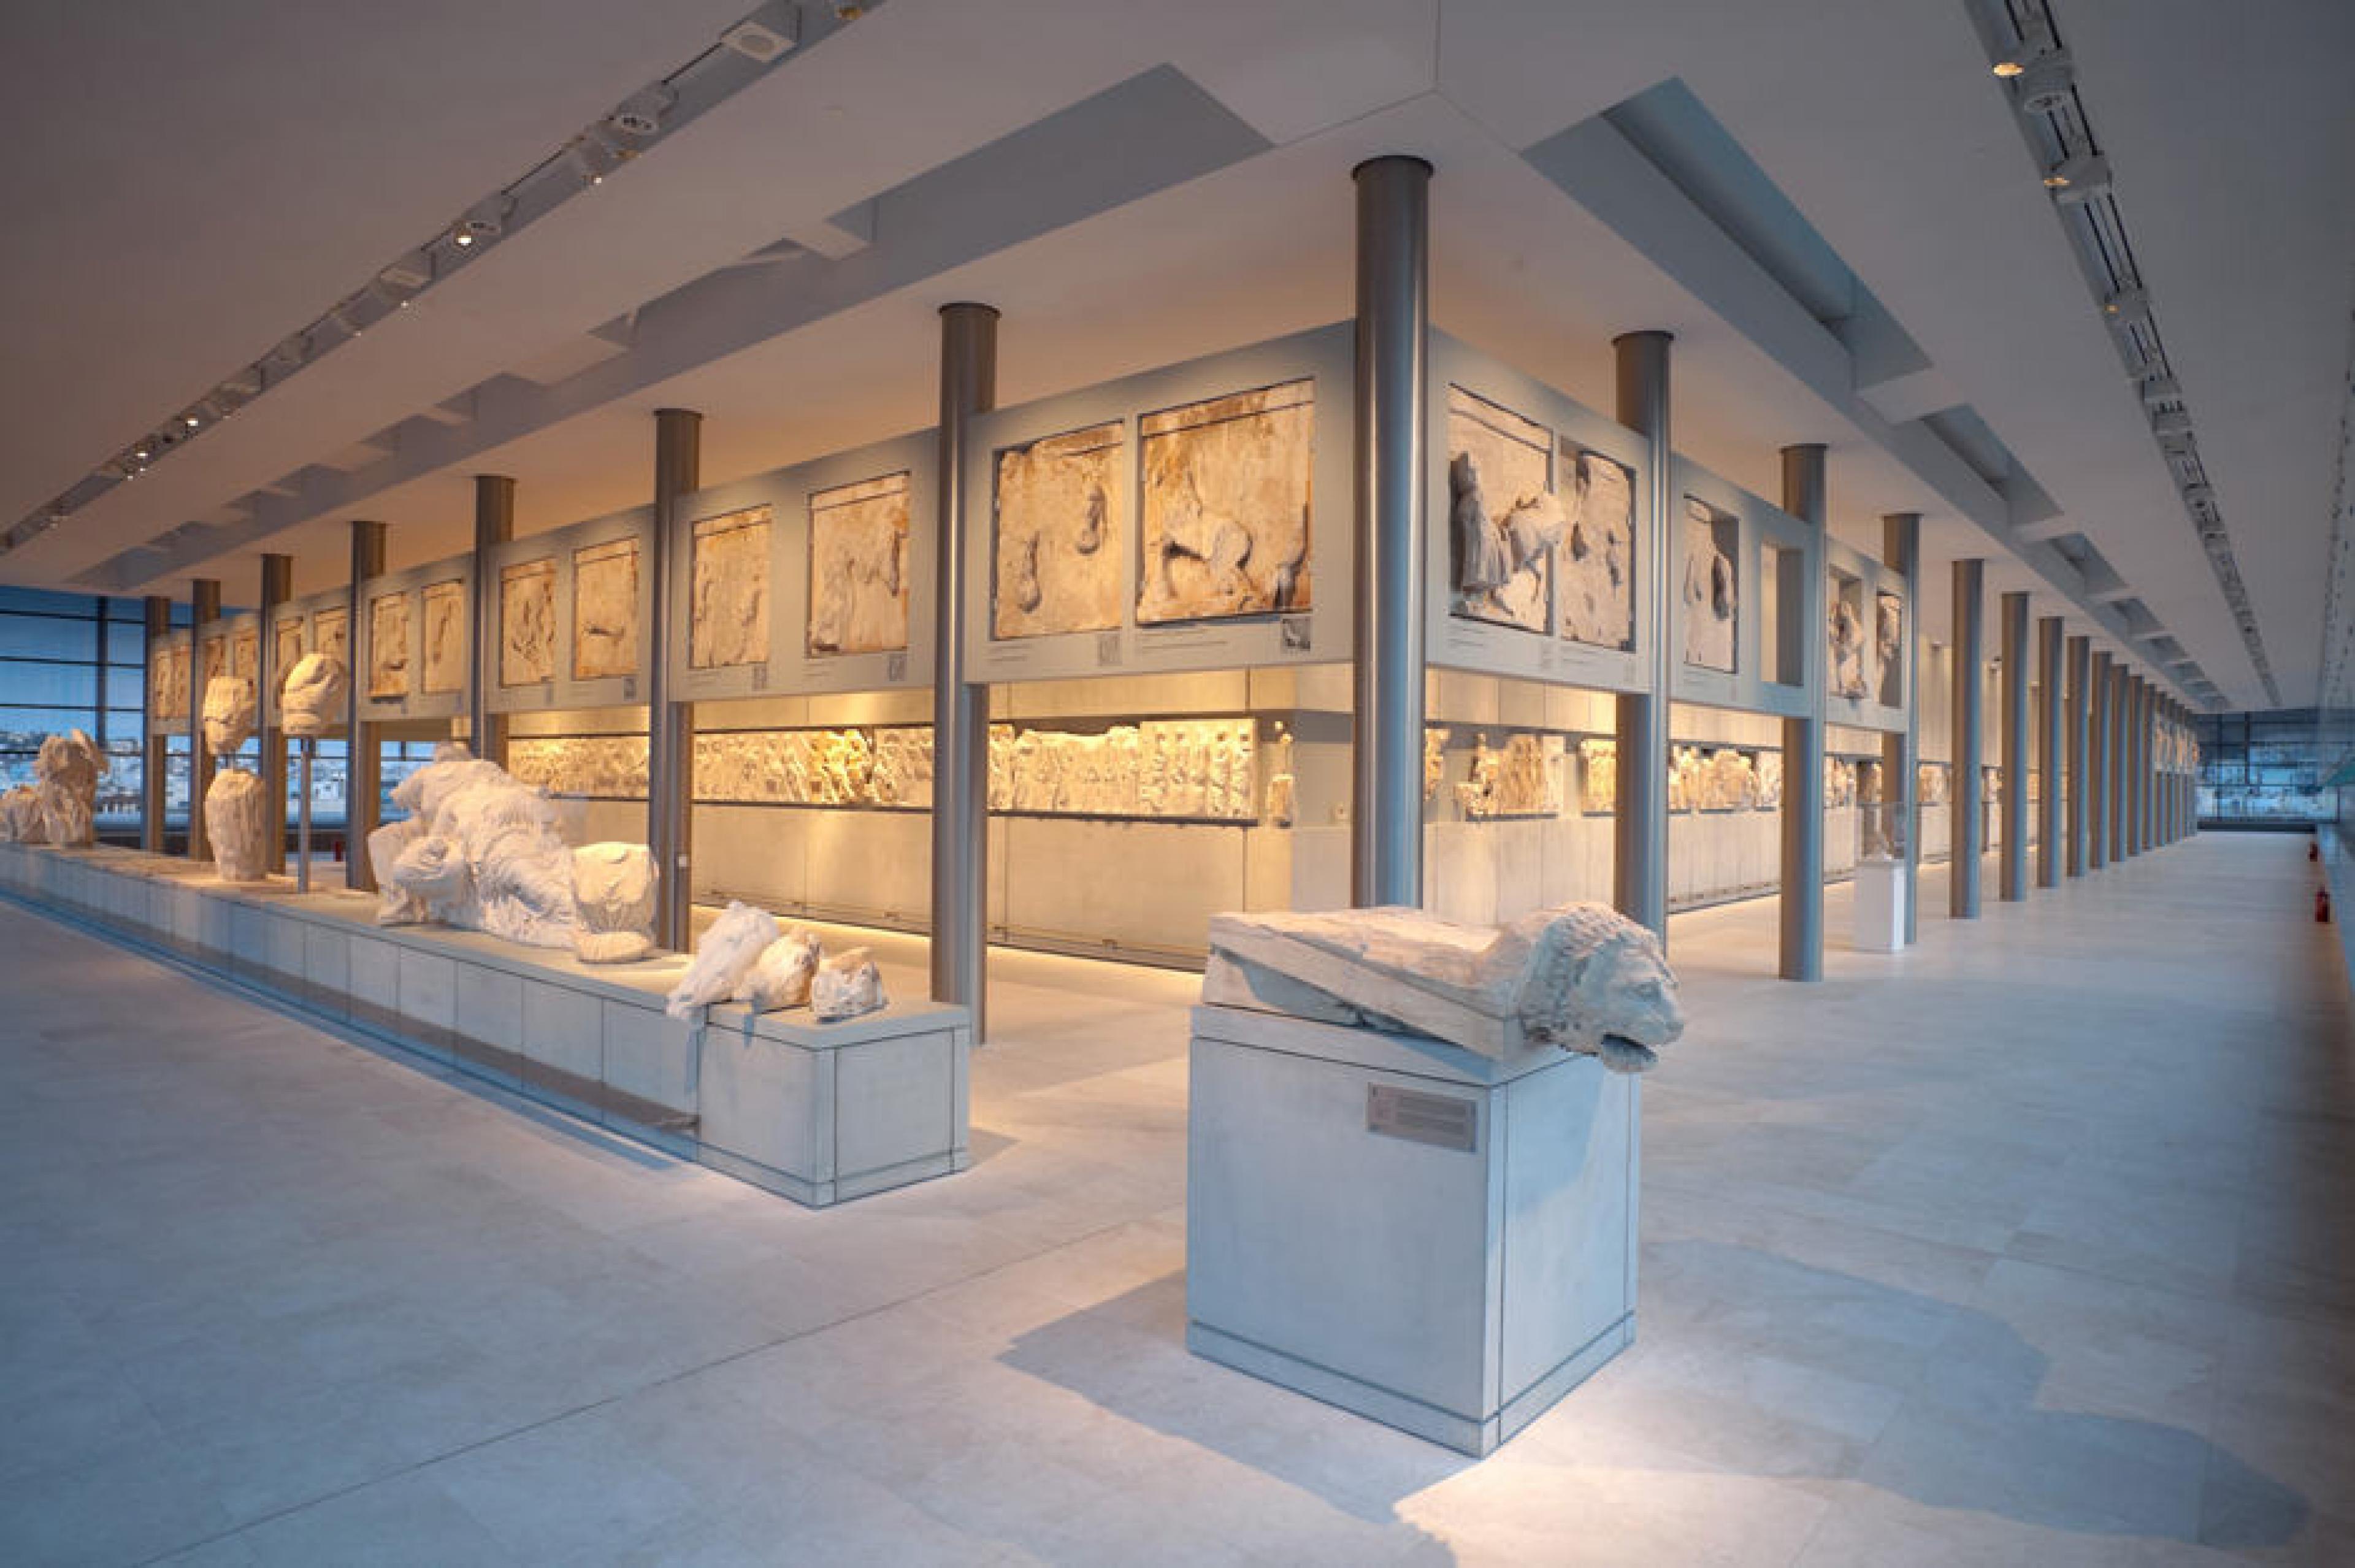 View of The Parthenon Gallery at Acropolis Museum, Athens, Greece - Copyright Nikos Daiilidis